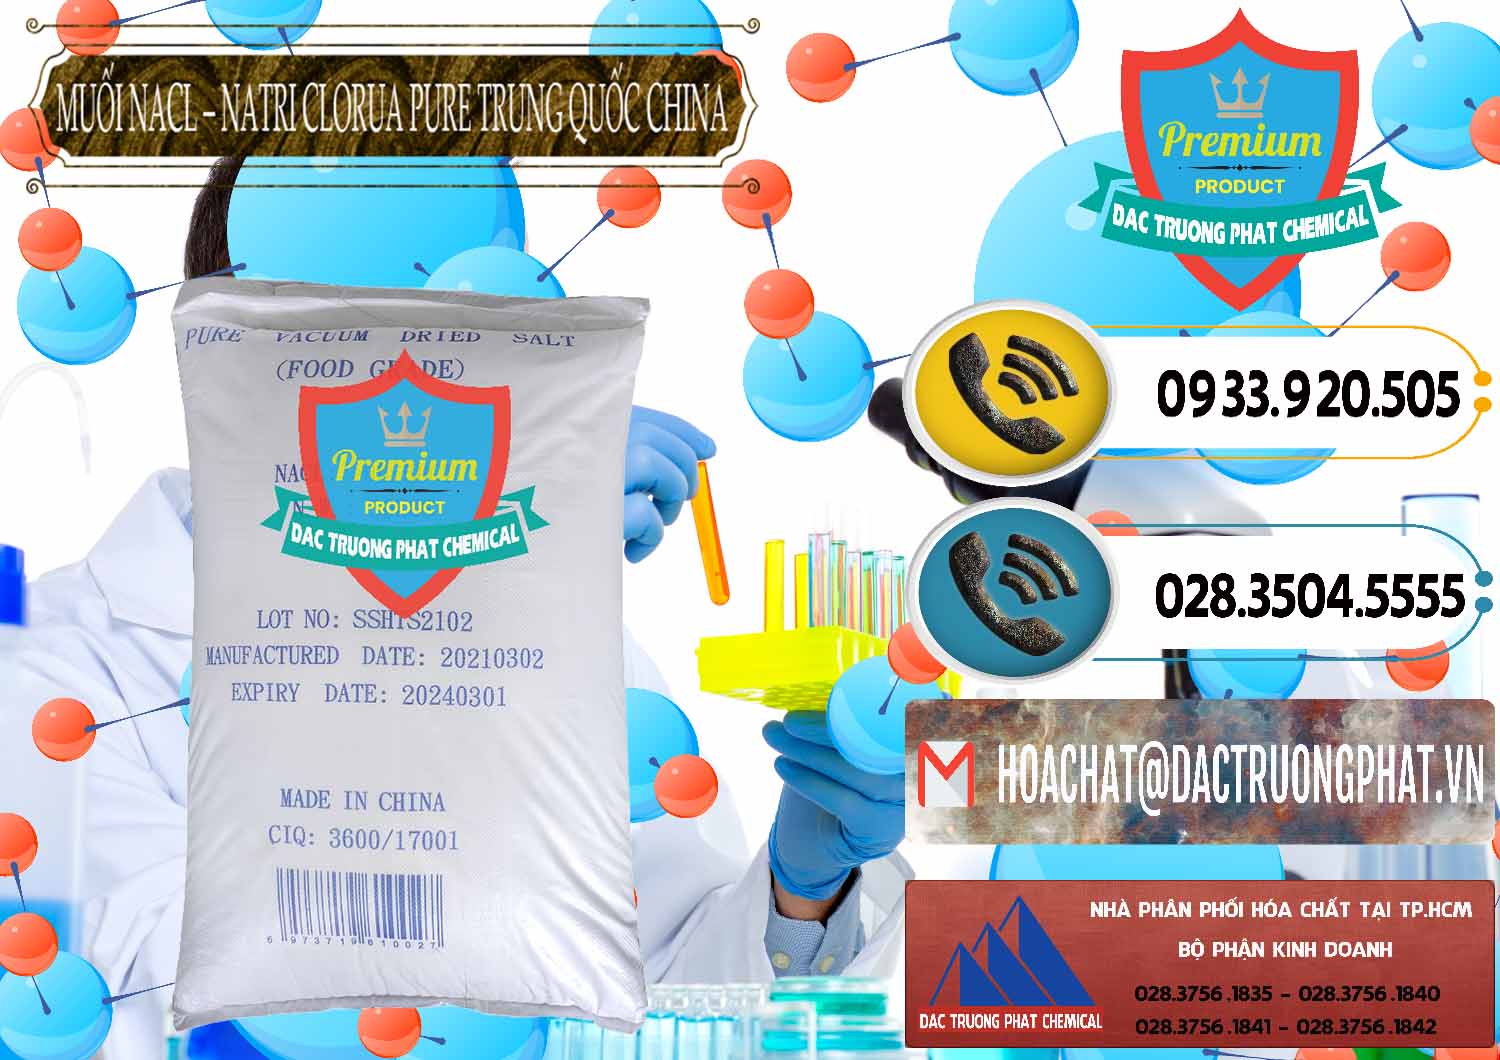 Cung cấp và bán Muối NaCL – Sodium Chloride Pure Trung Quốc China - 0230 - Kinh doanh - phân phối hóa chất tại TP.HCM - hoachatdetnhuom.vn